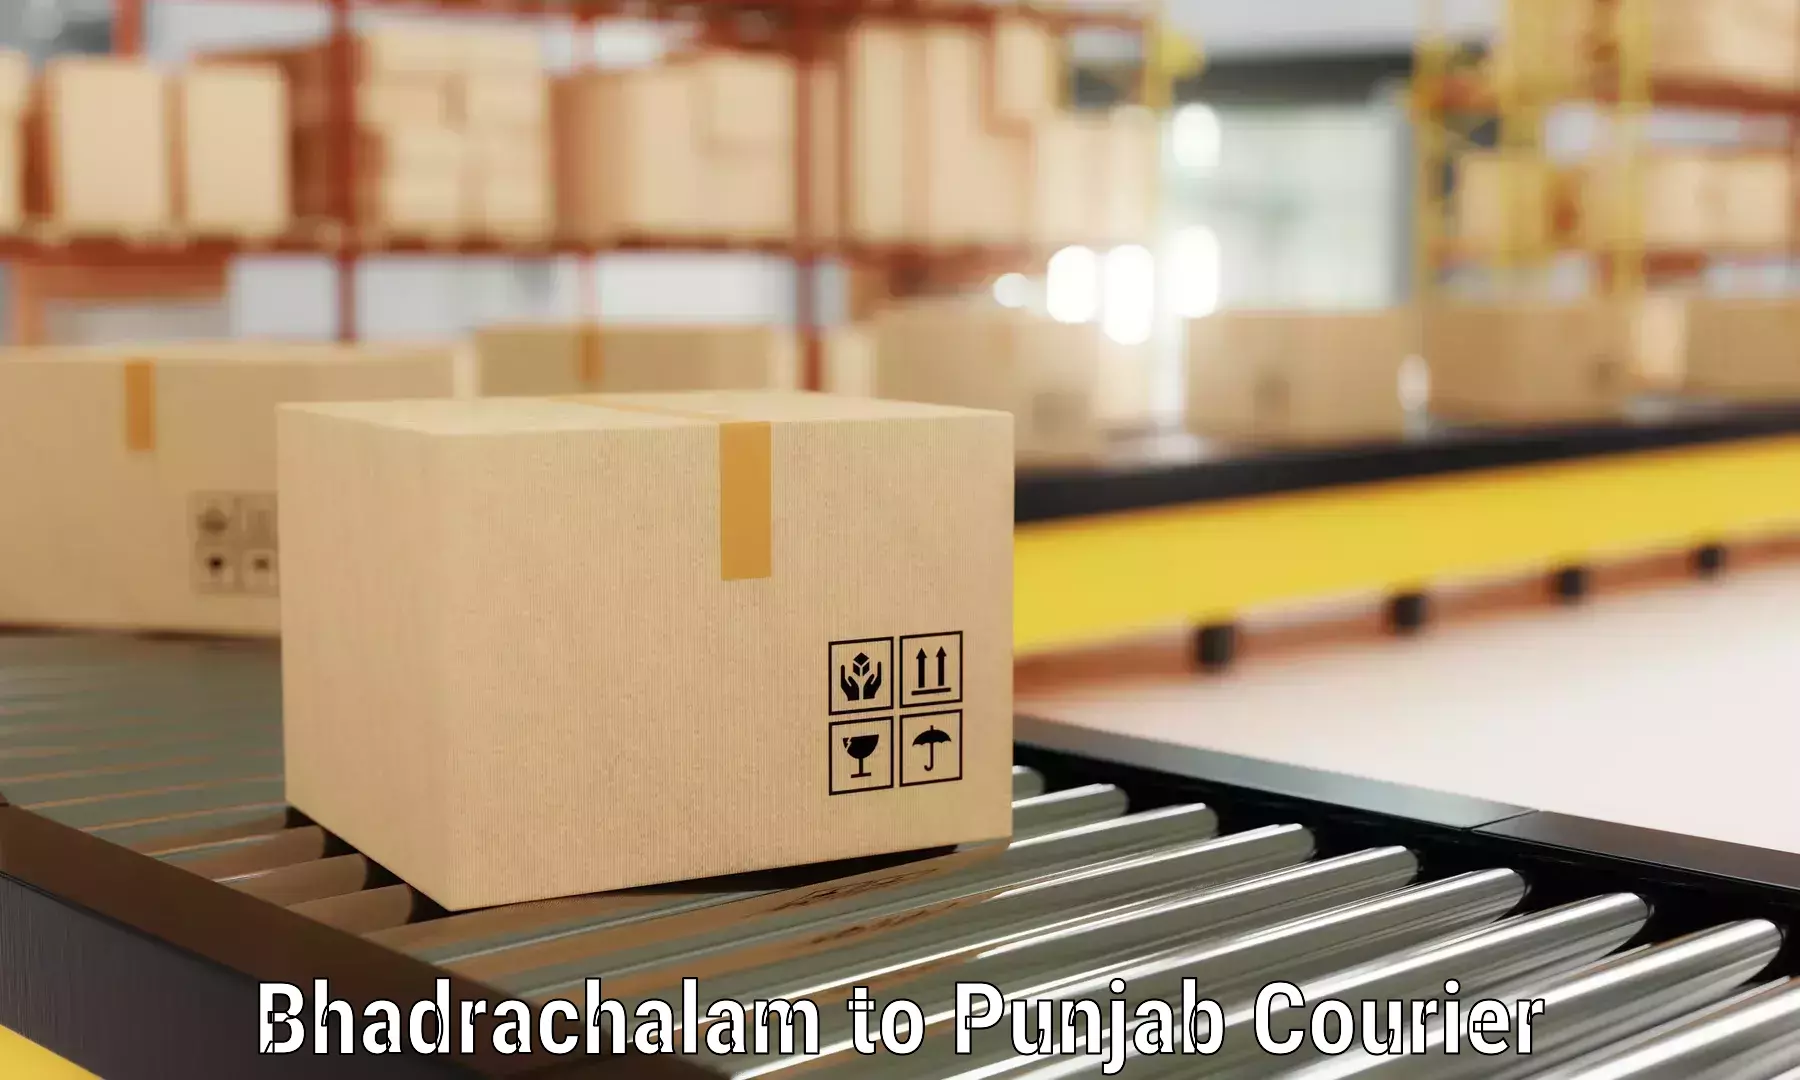 Furniture transport company Bhadrachalam to Nabha